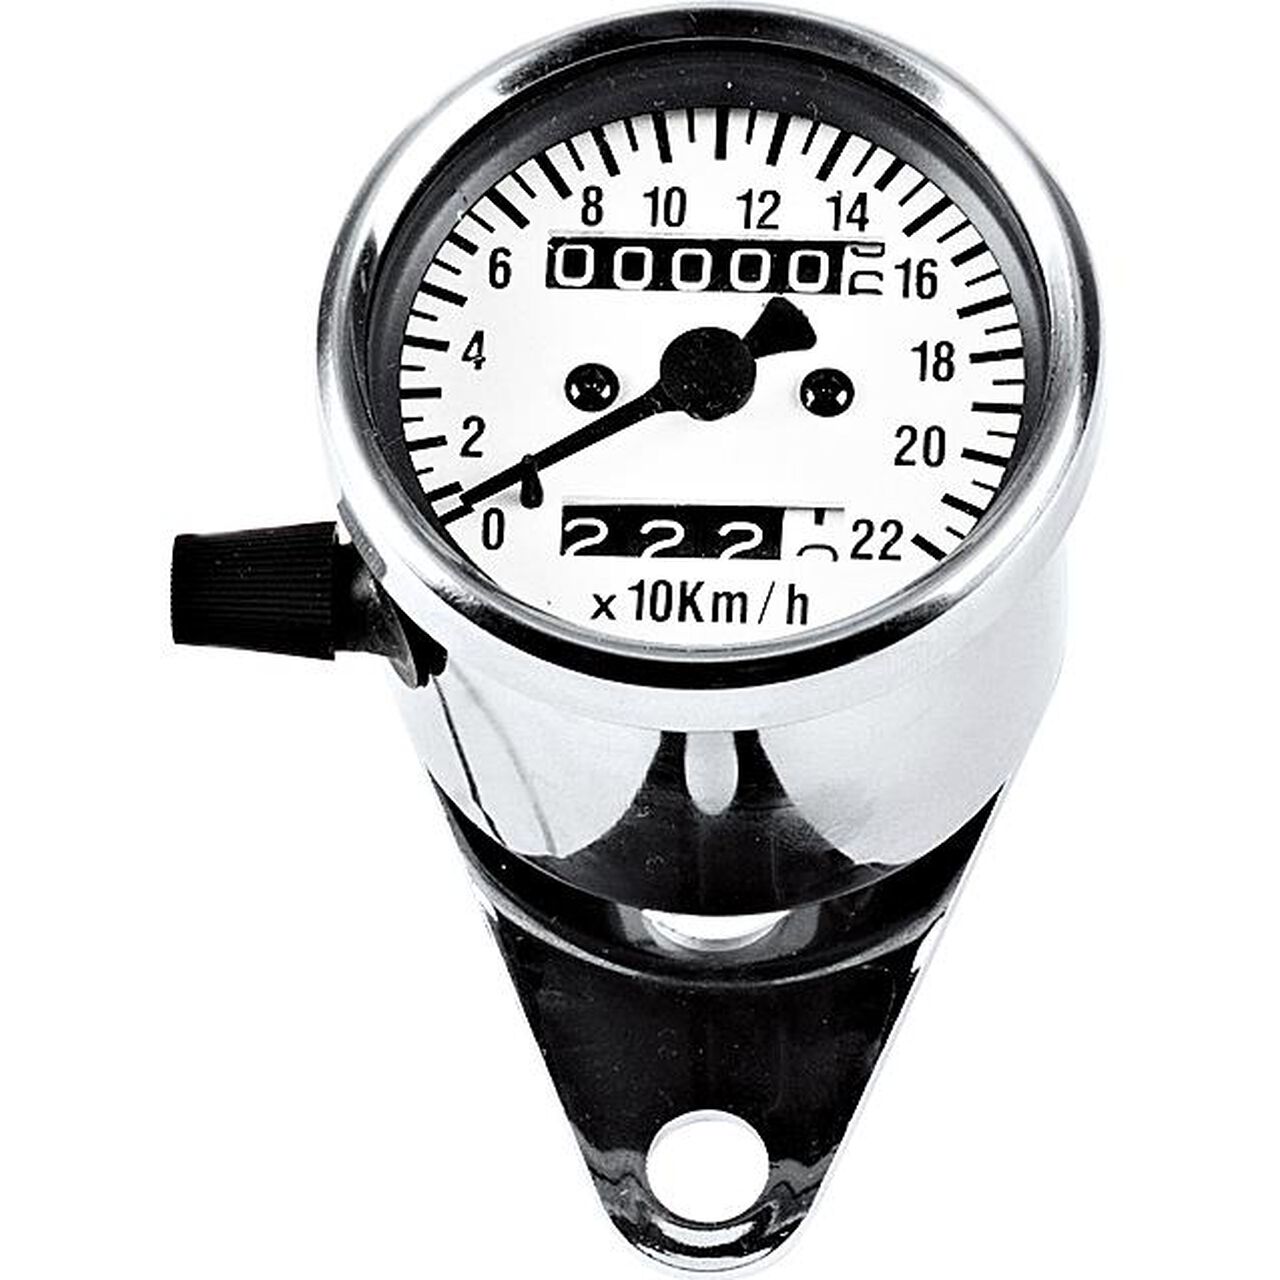 Motorrad Tachometer passgenau für dein Bike